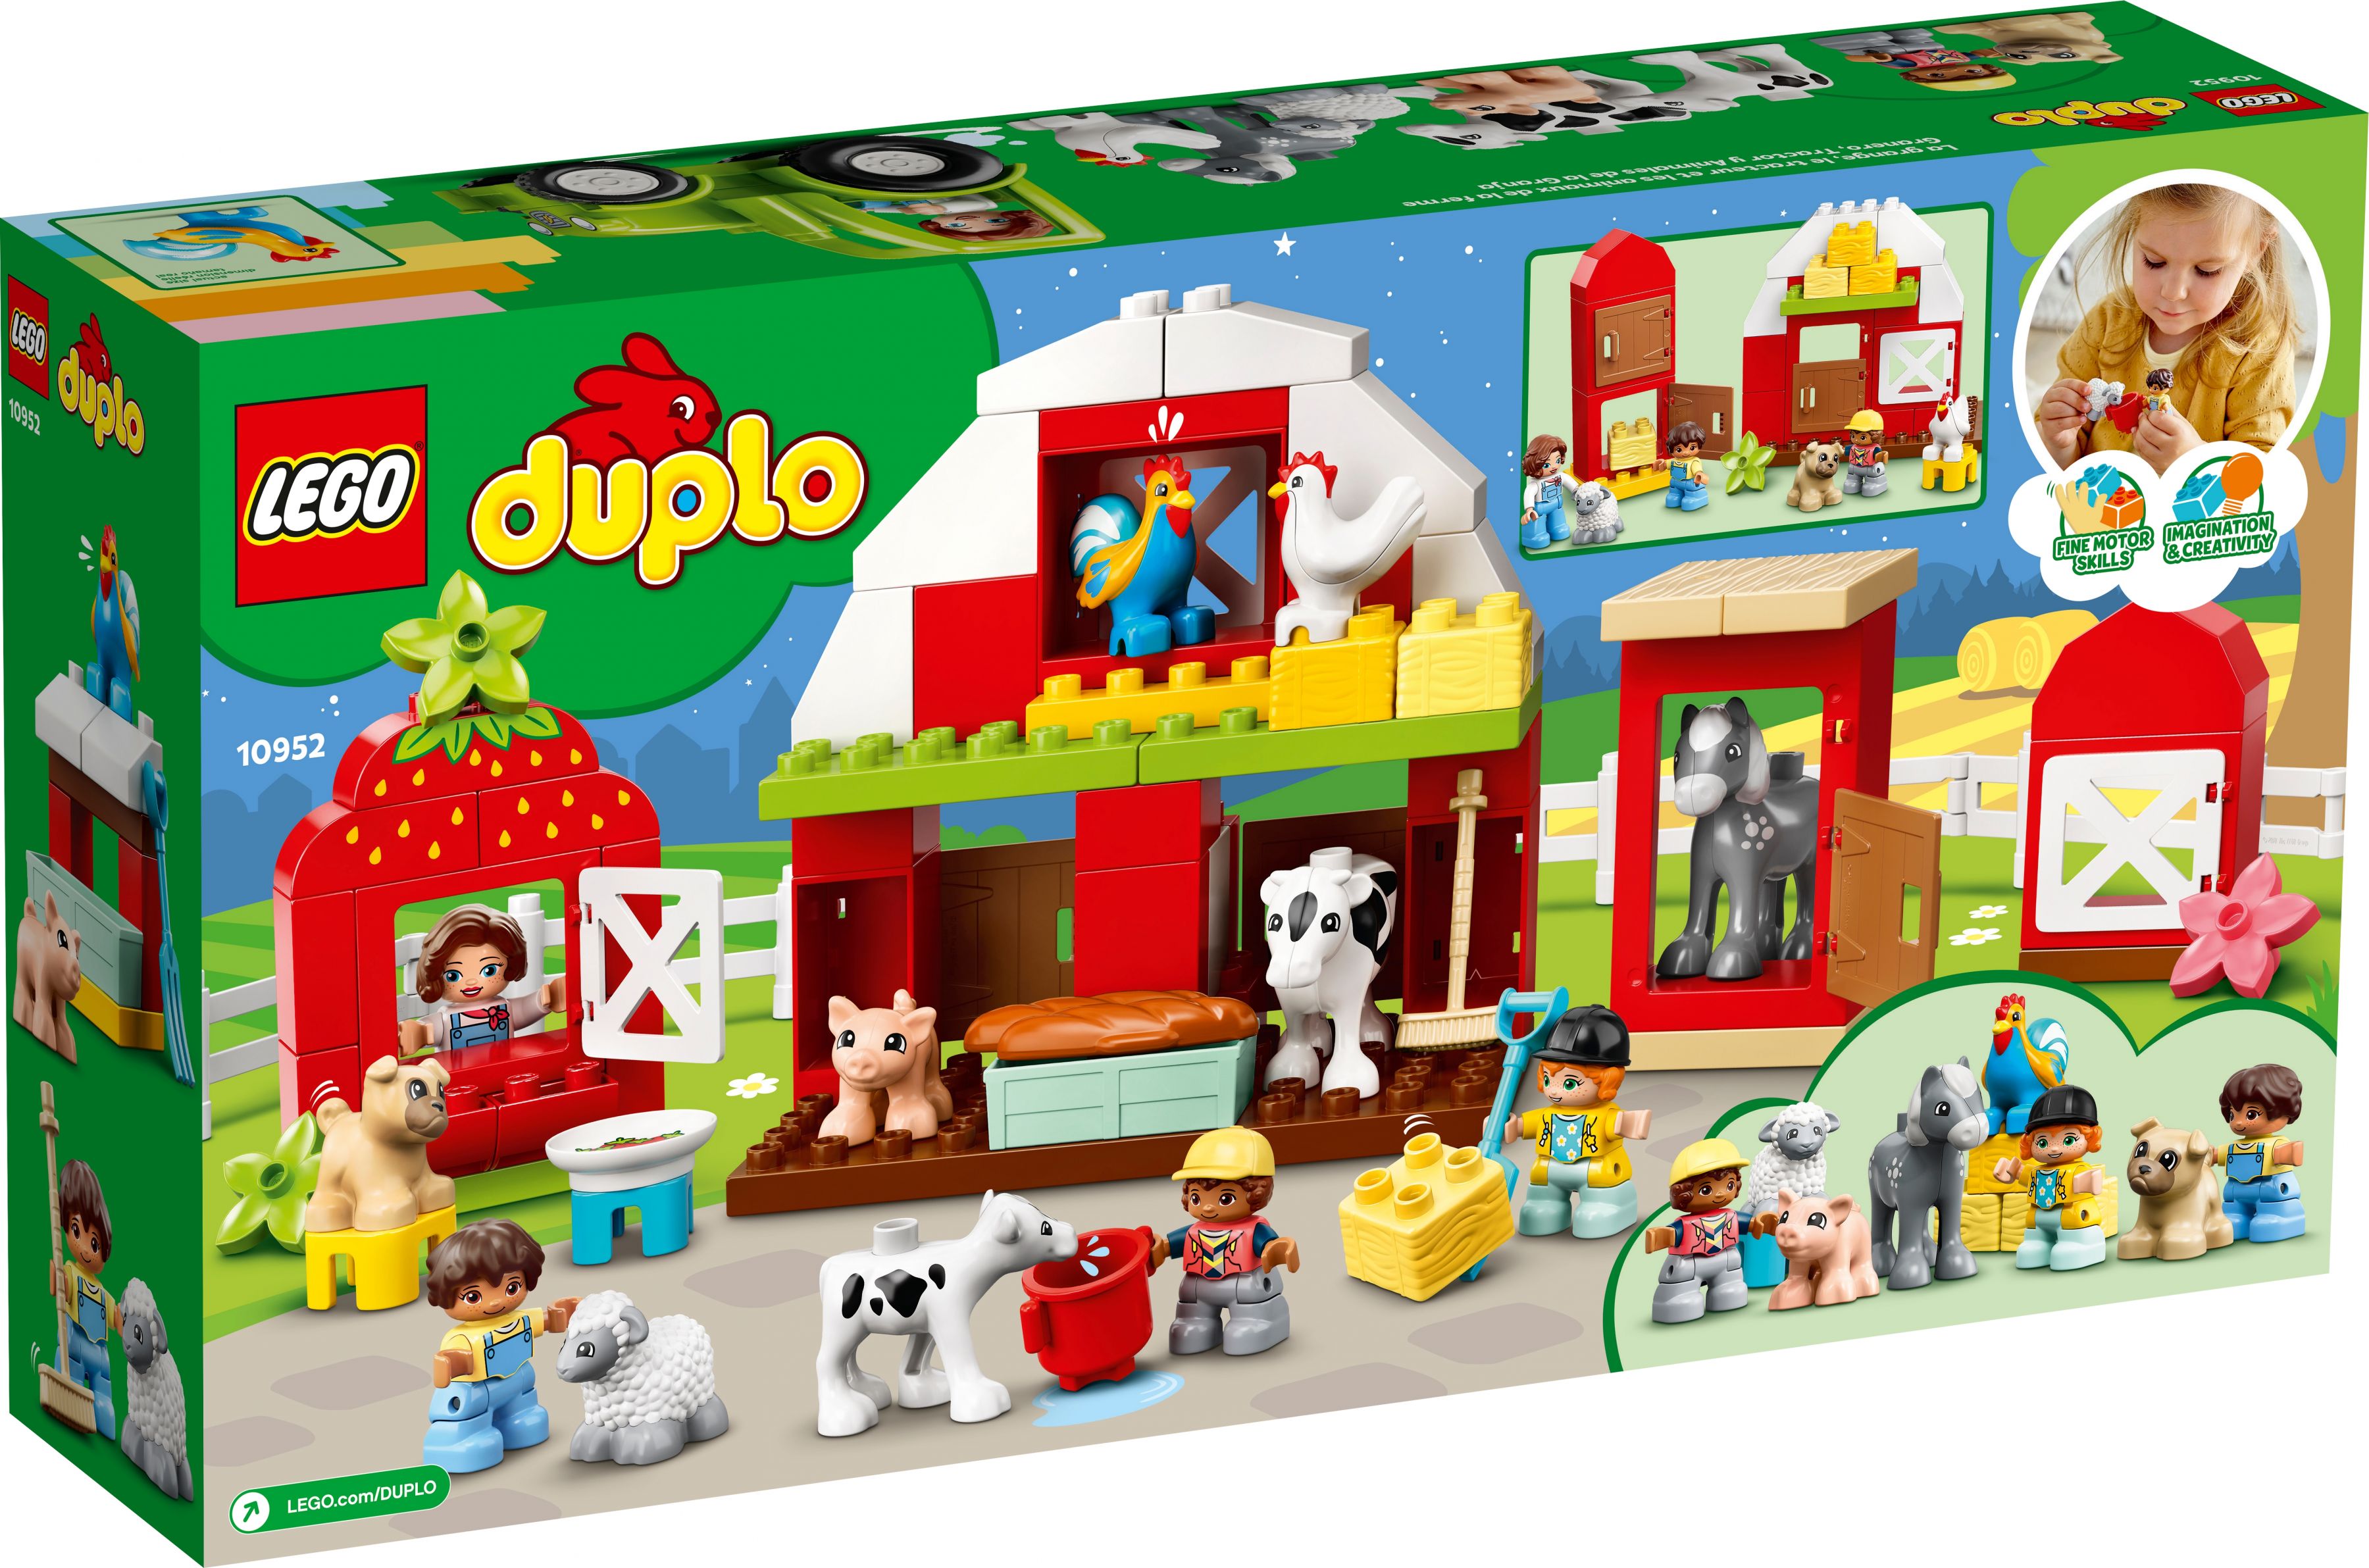 LEGO Duplo 10952 Scheune, Traktor und Tierpflege LEGO_10952_box5_v39.jpg